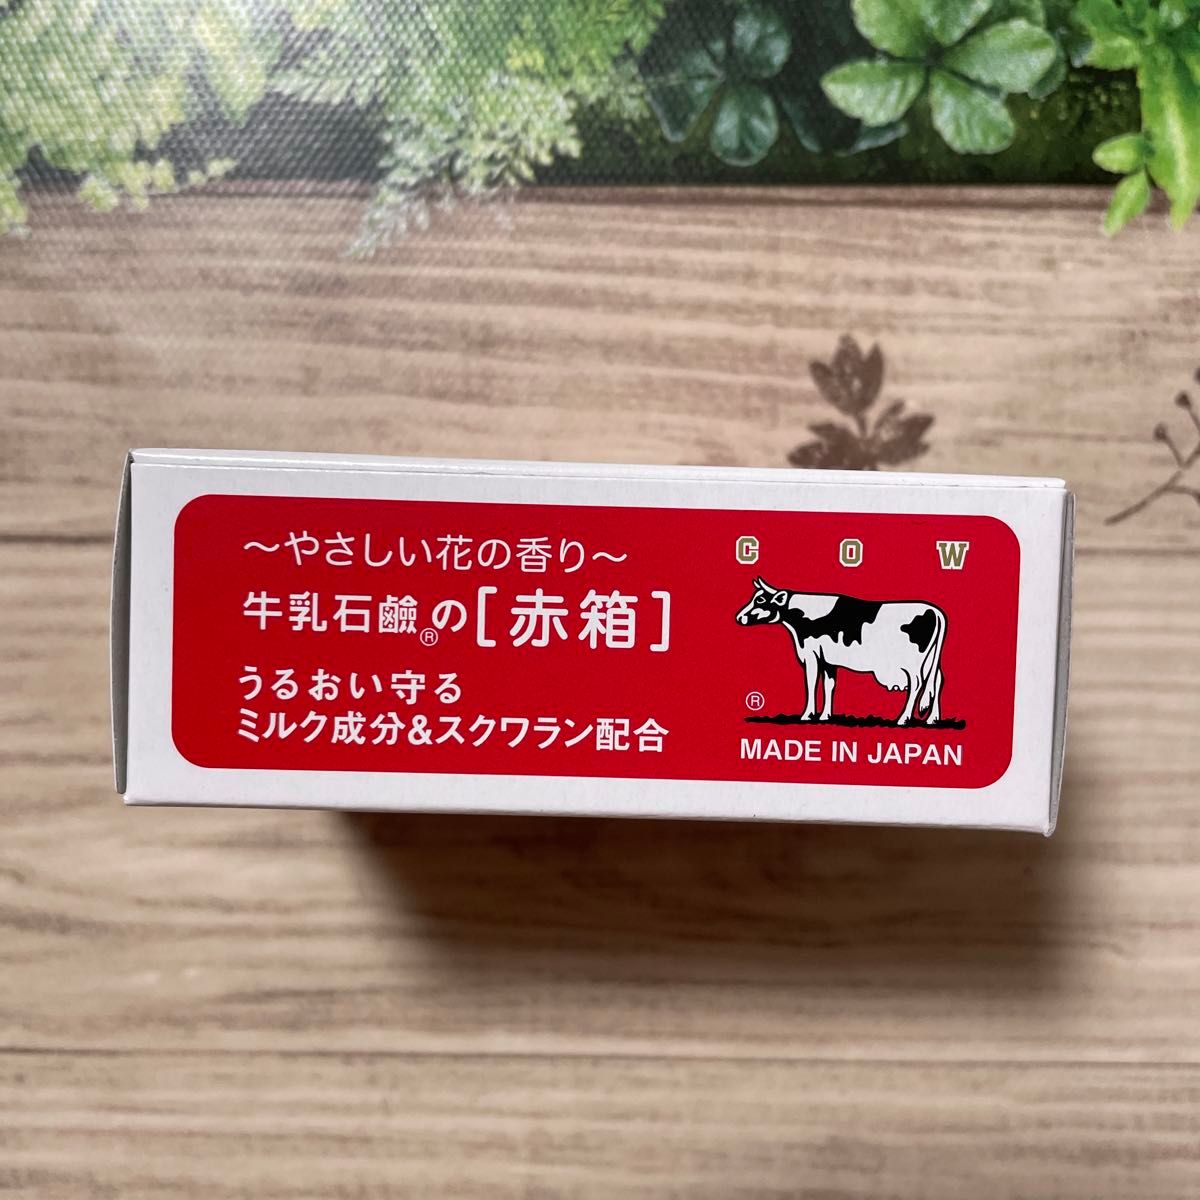 牛乳石鹸 赤箱 カウブランド 洗顔石鹸 国産 90g × 9箱セット